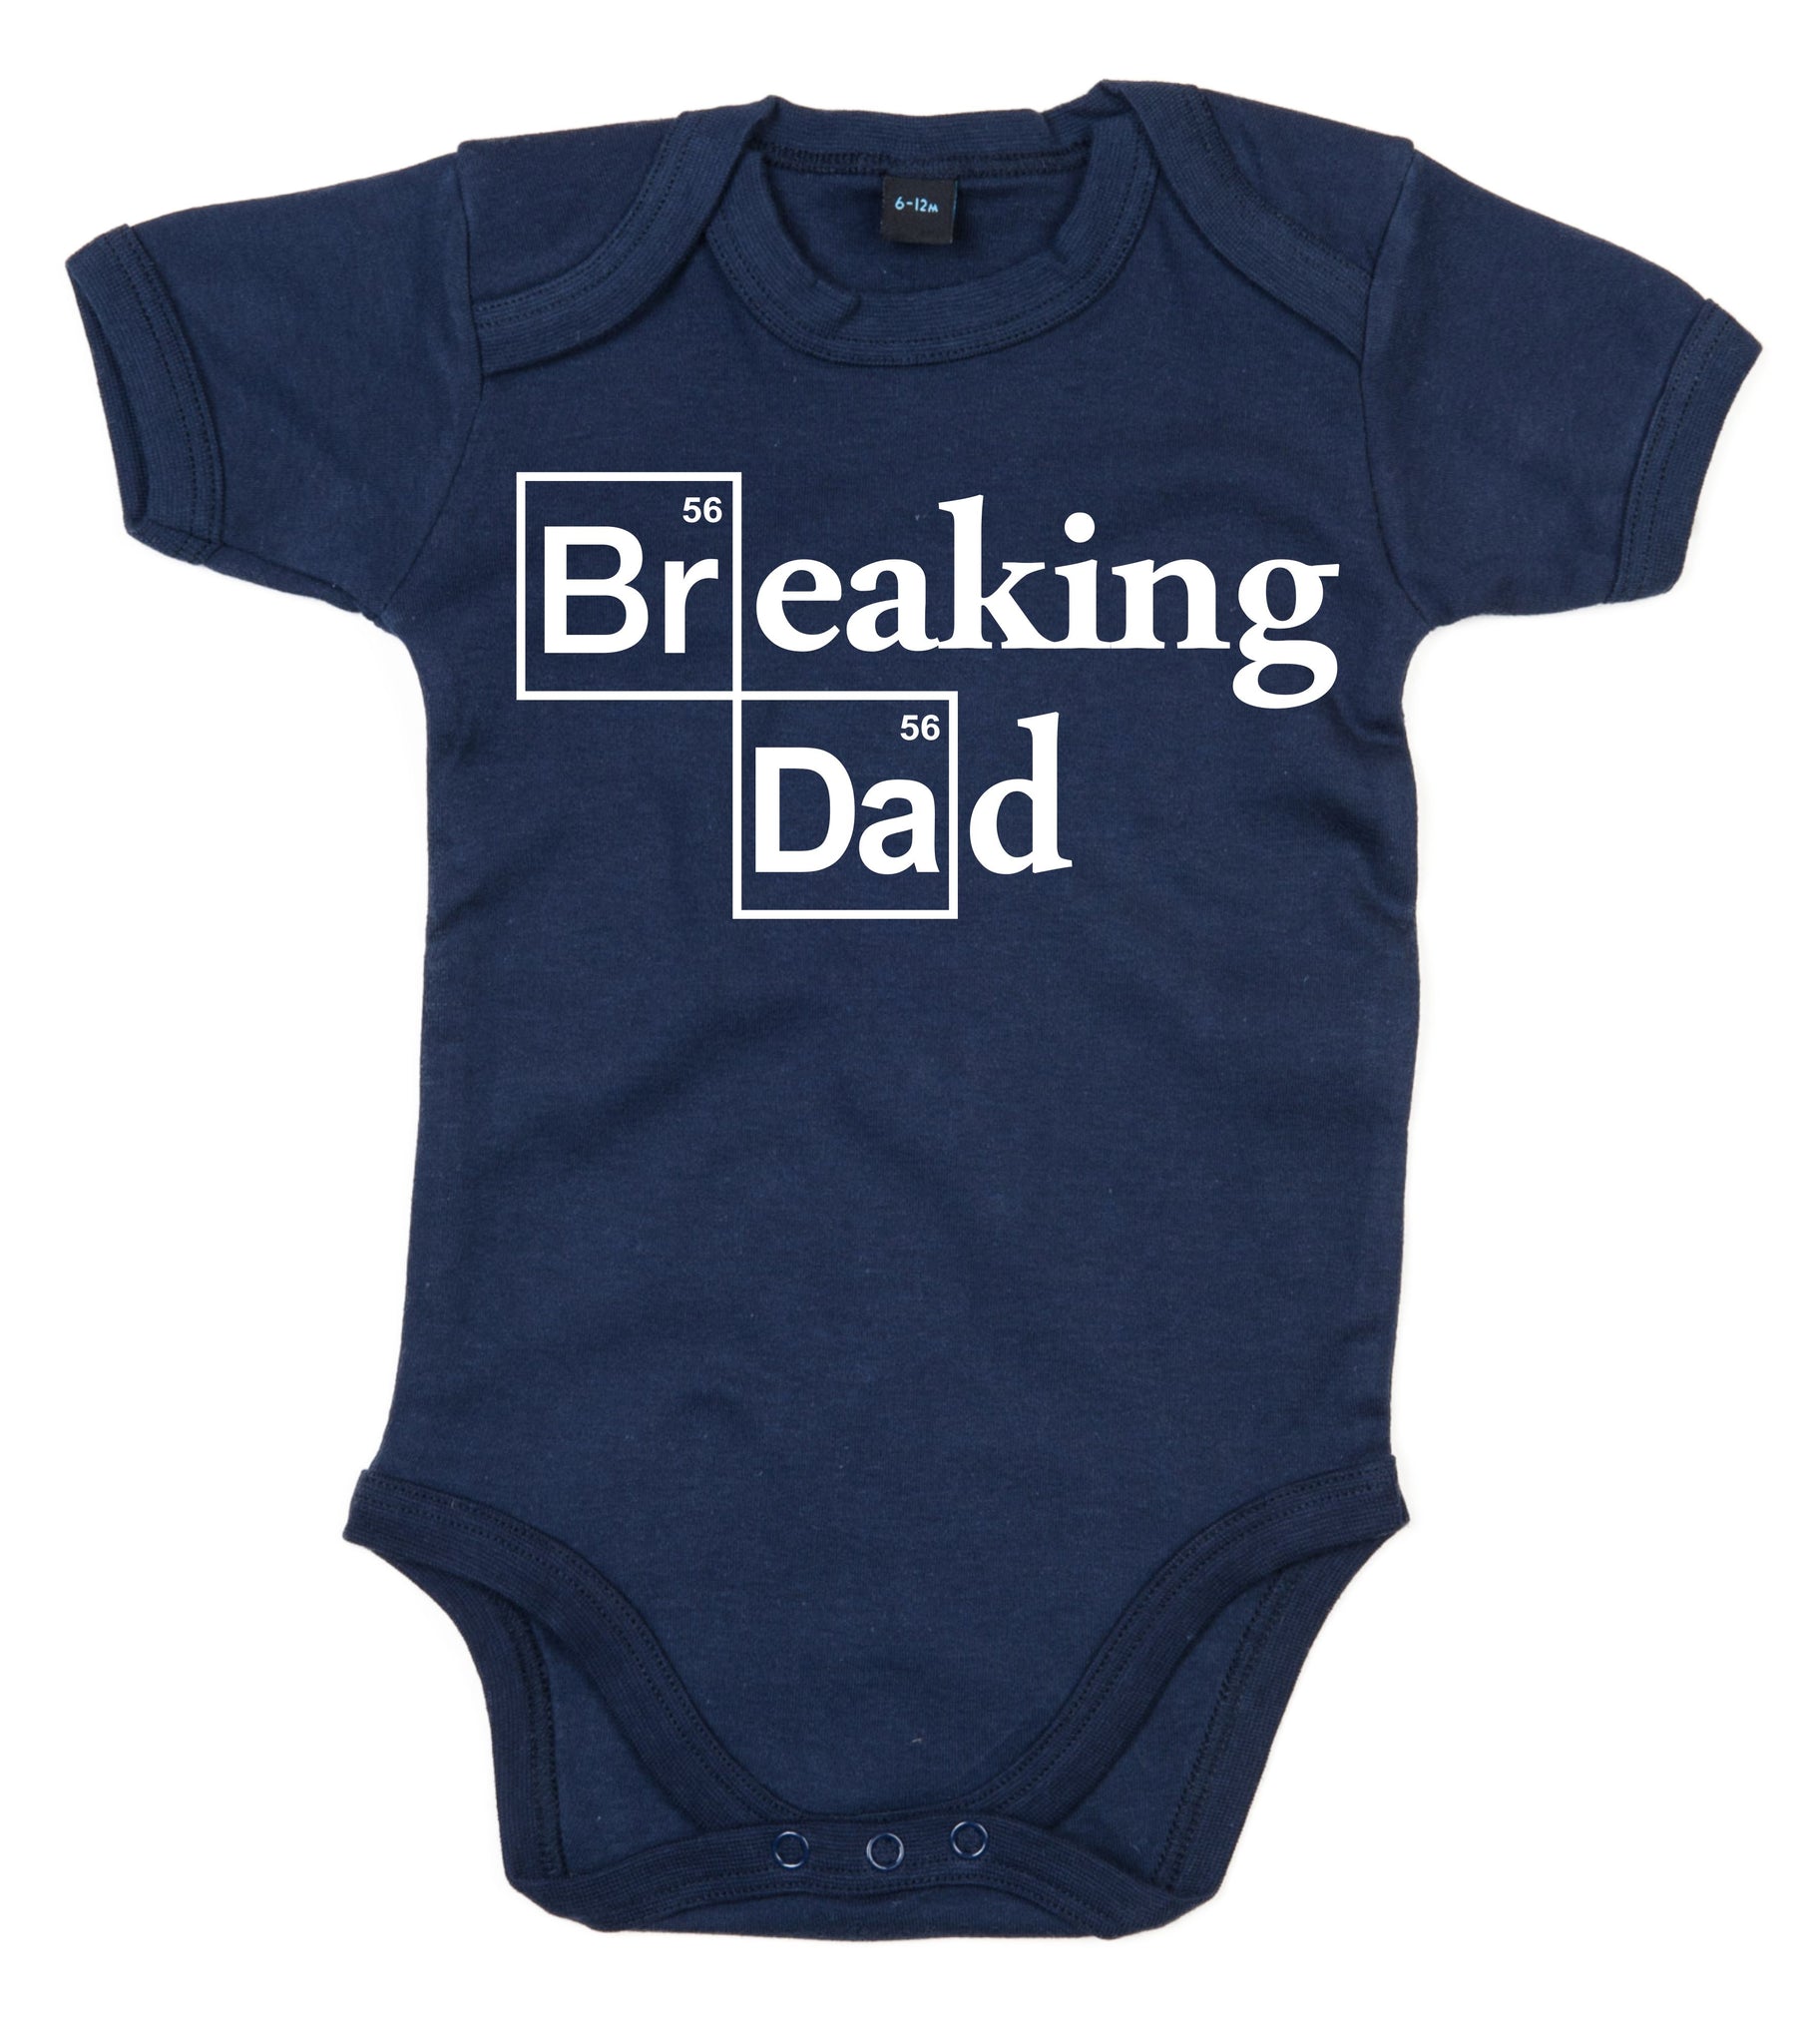 Breaking Dad Baby Bodysuit